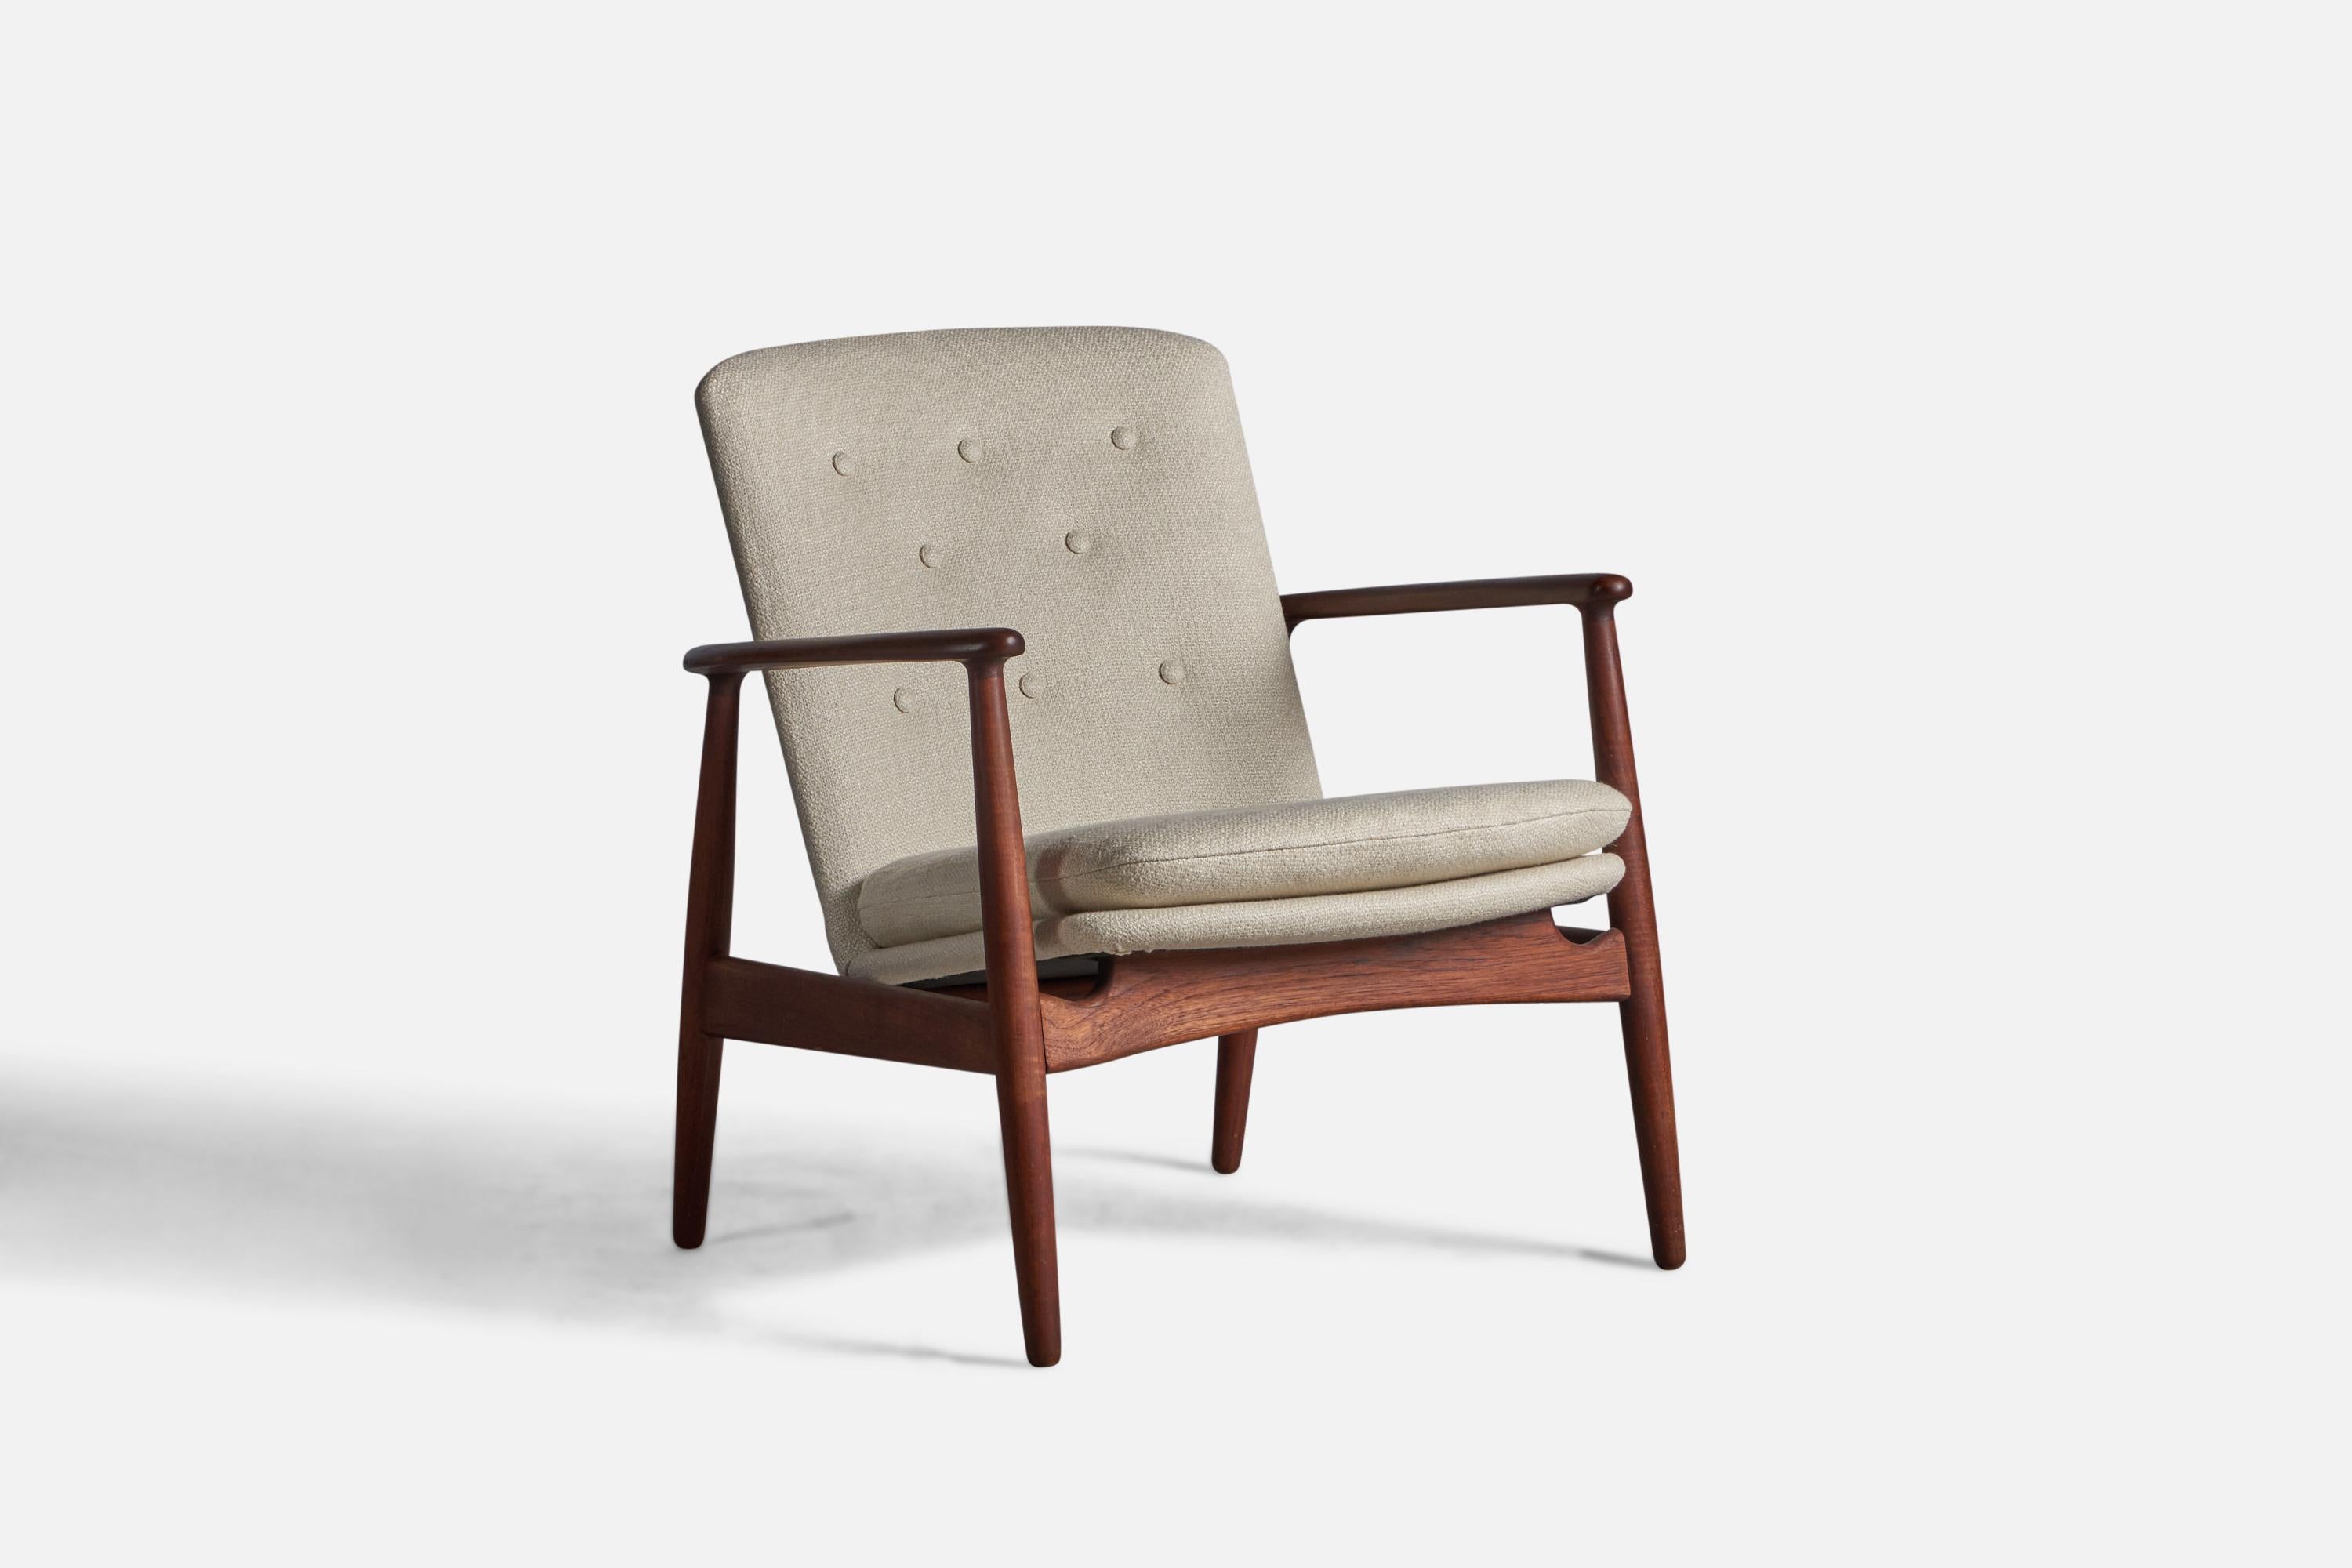 Chaise longue en teck et tissu beige, conçue par Arne Vodder et produite par Bovirke, Danemark, années 1950.

Hauteur d'assise de 15,5 pouces